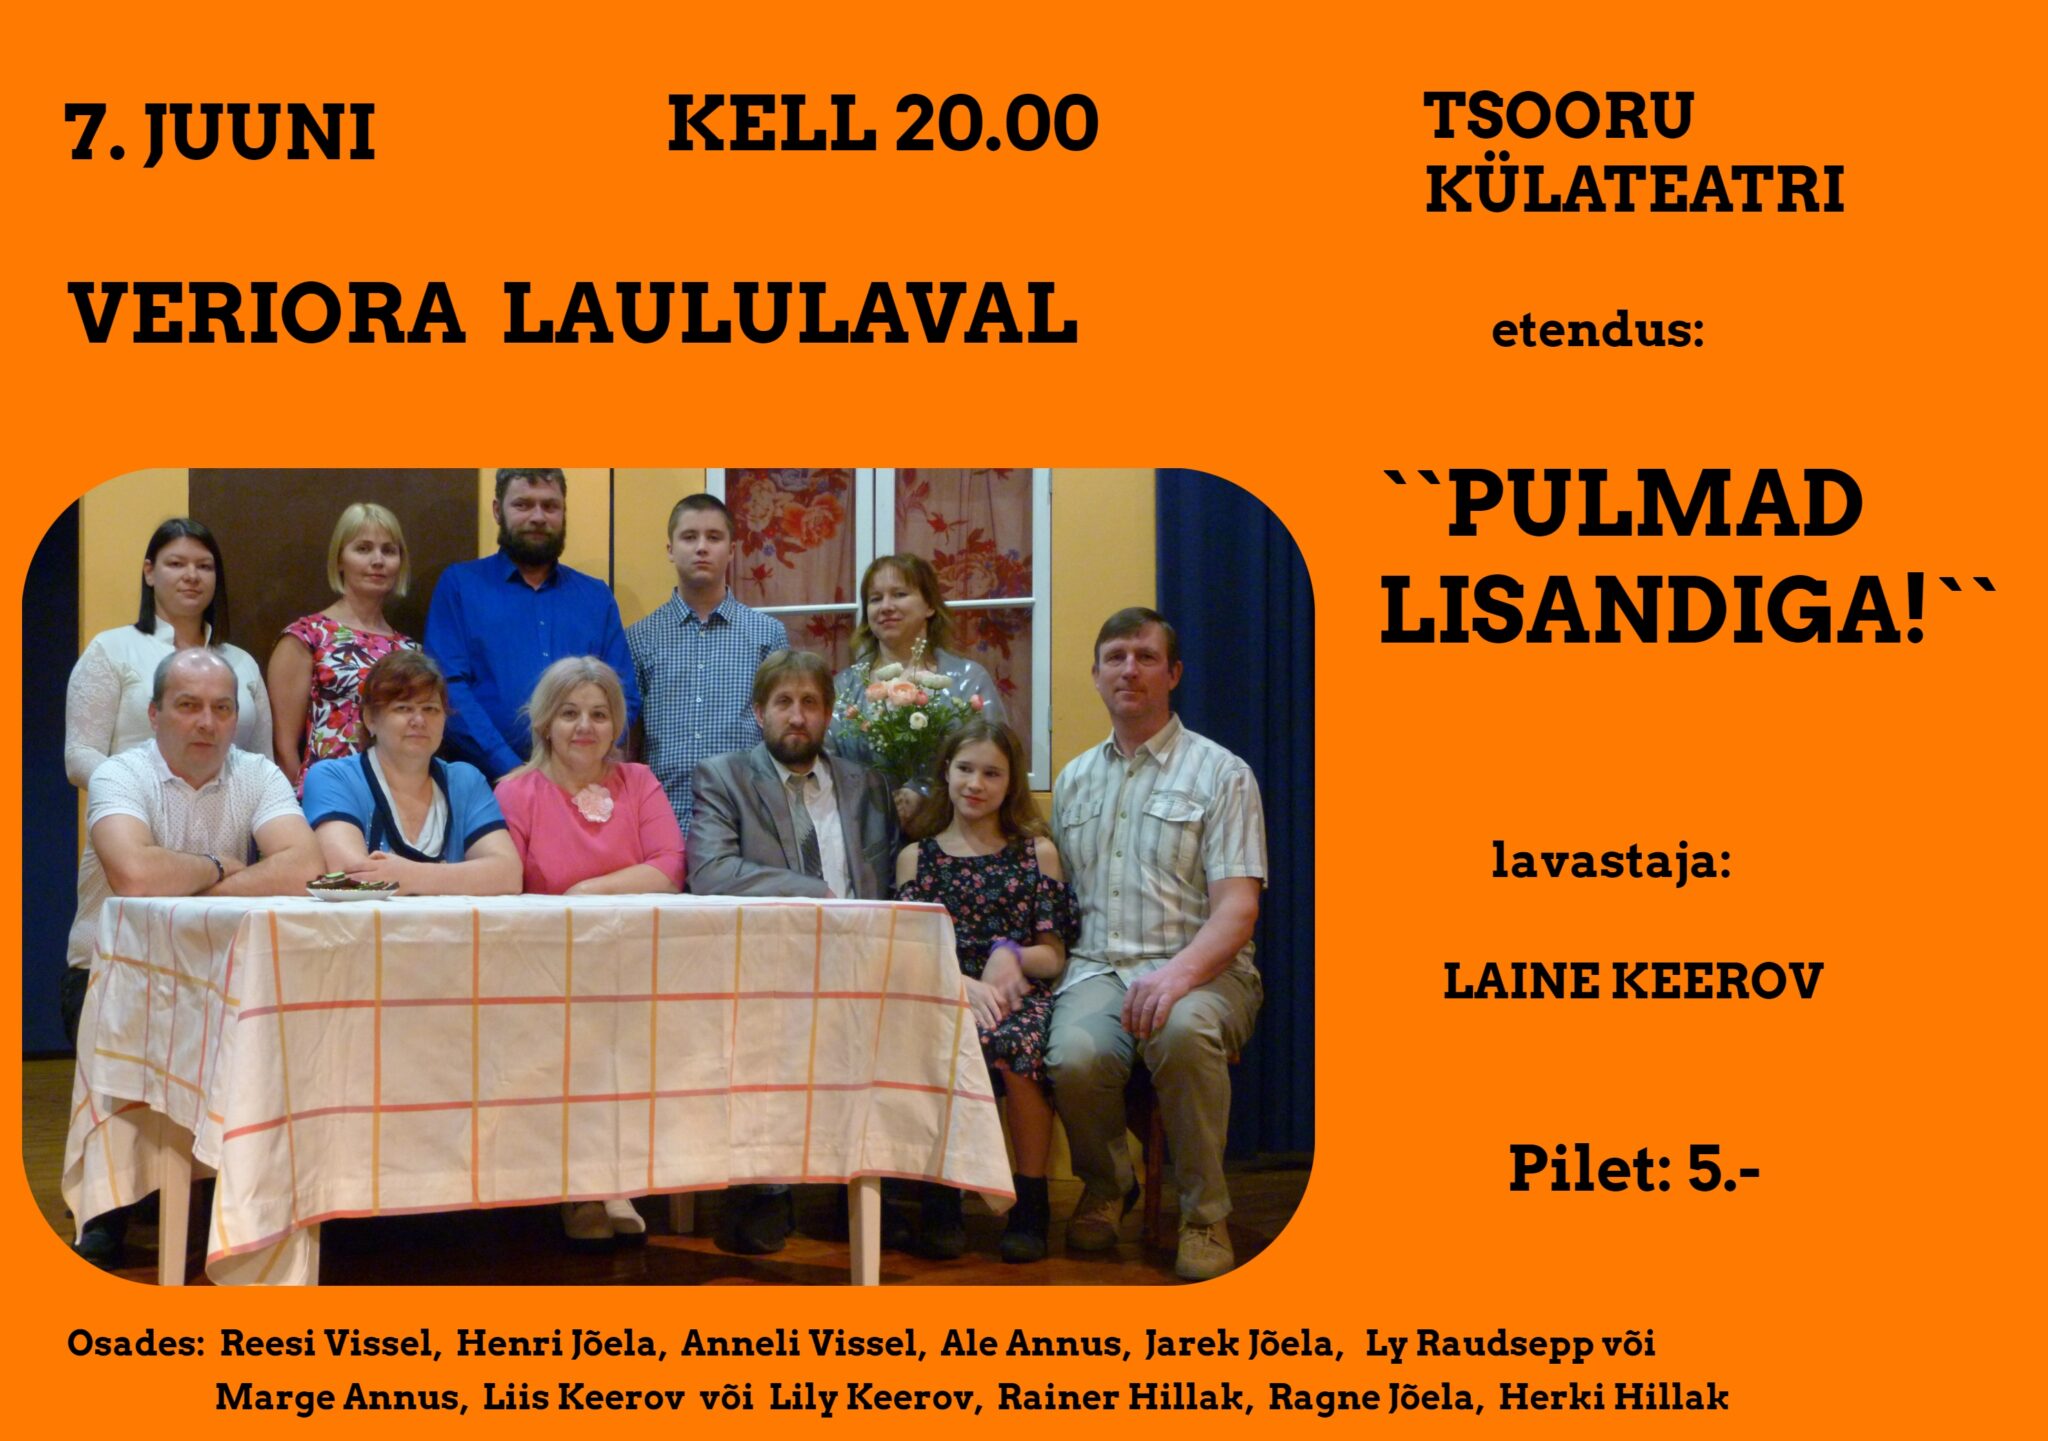 Tsooru külateatri etendus "Pulmad lisandiga" Veriora laululaval @ Veriora | Põlva maakond | Eesti